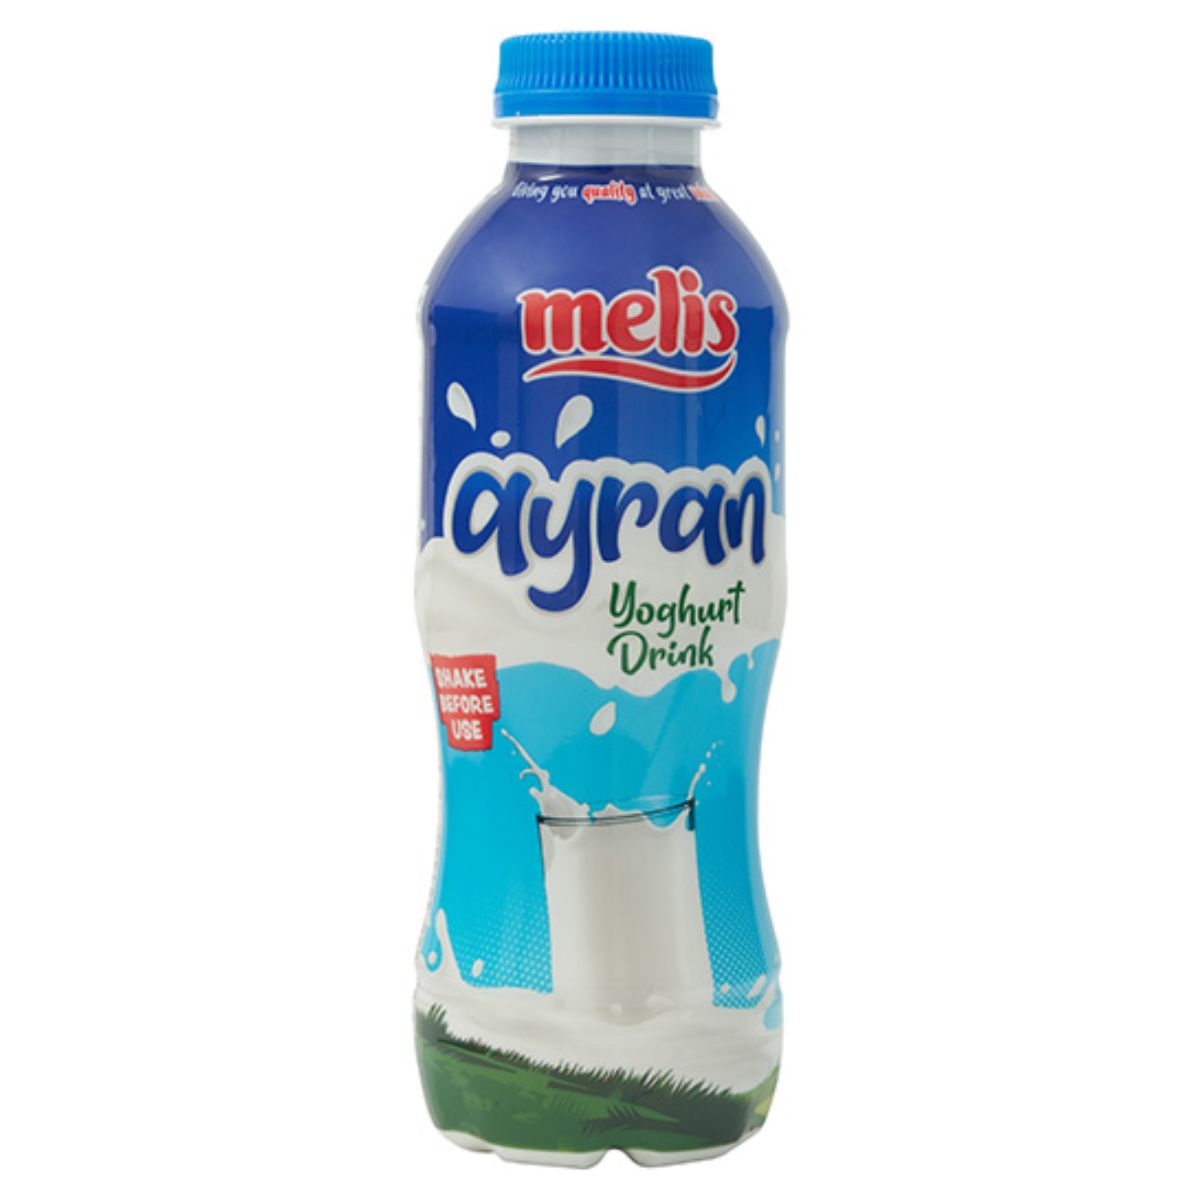 Melis Ayran Yogurt Drink 250ml.